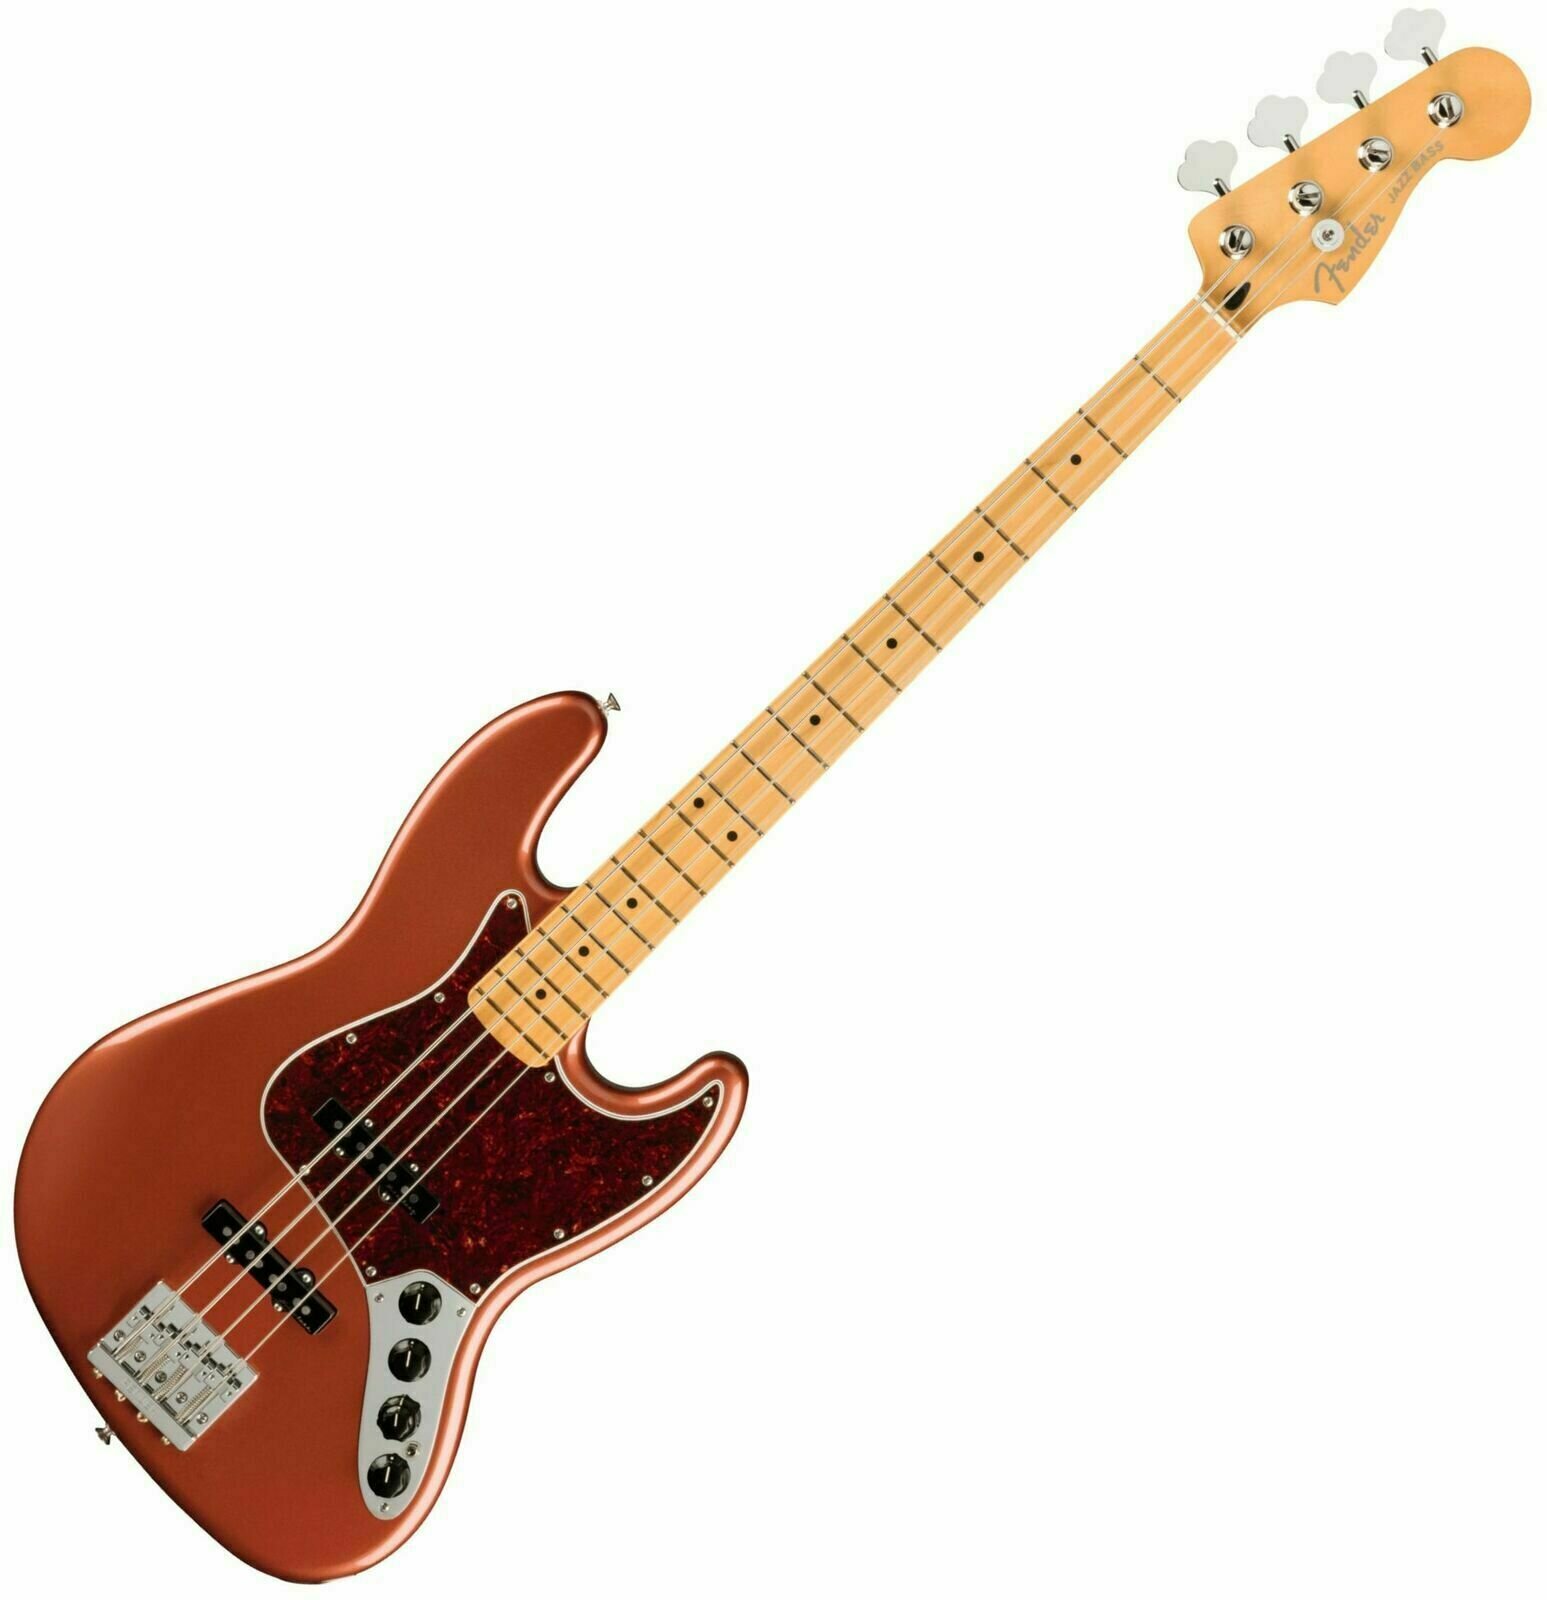 E-Bass Fender Player Plus Jazz Bass MN Aged Candy Apple Red (Beschädigt)